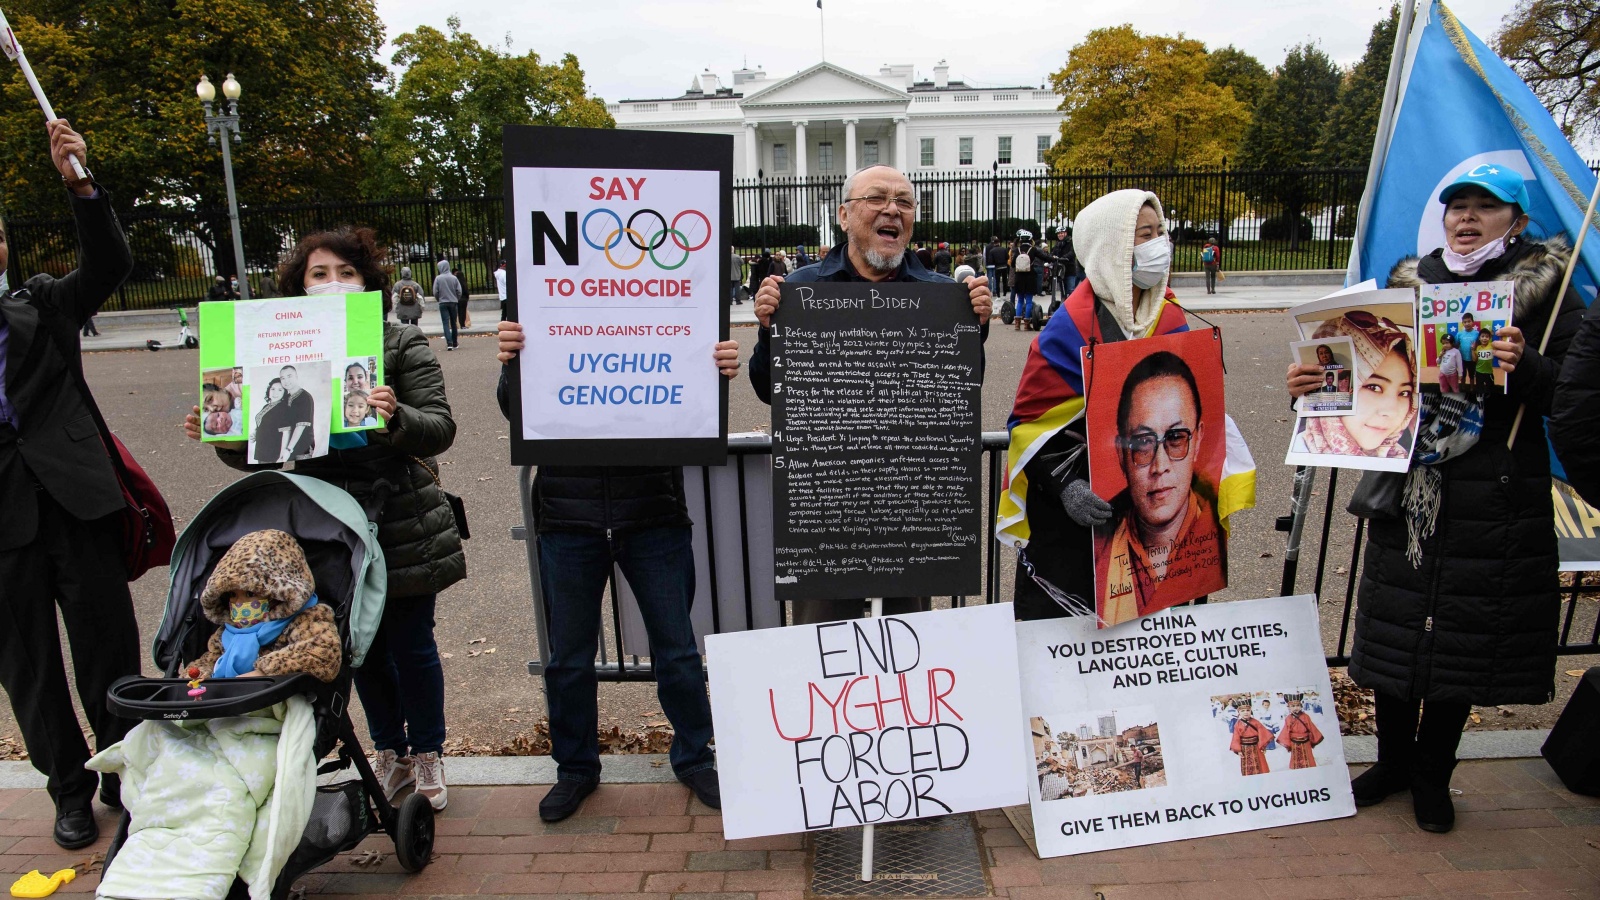 متظاهرون أمام البيت الأبيض يحتجون على معاملة الصينيين للأويغور والأقليات العرقية الأخرى في شينجيانغ.